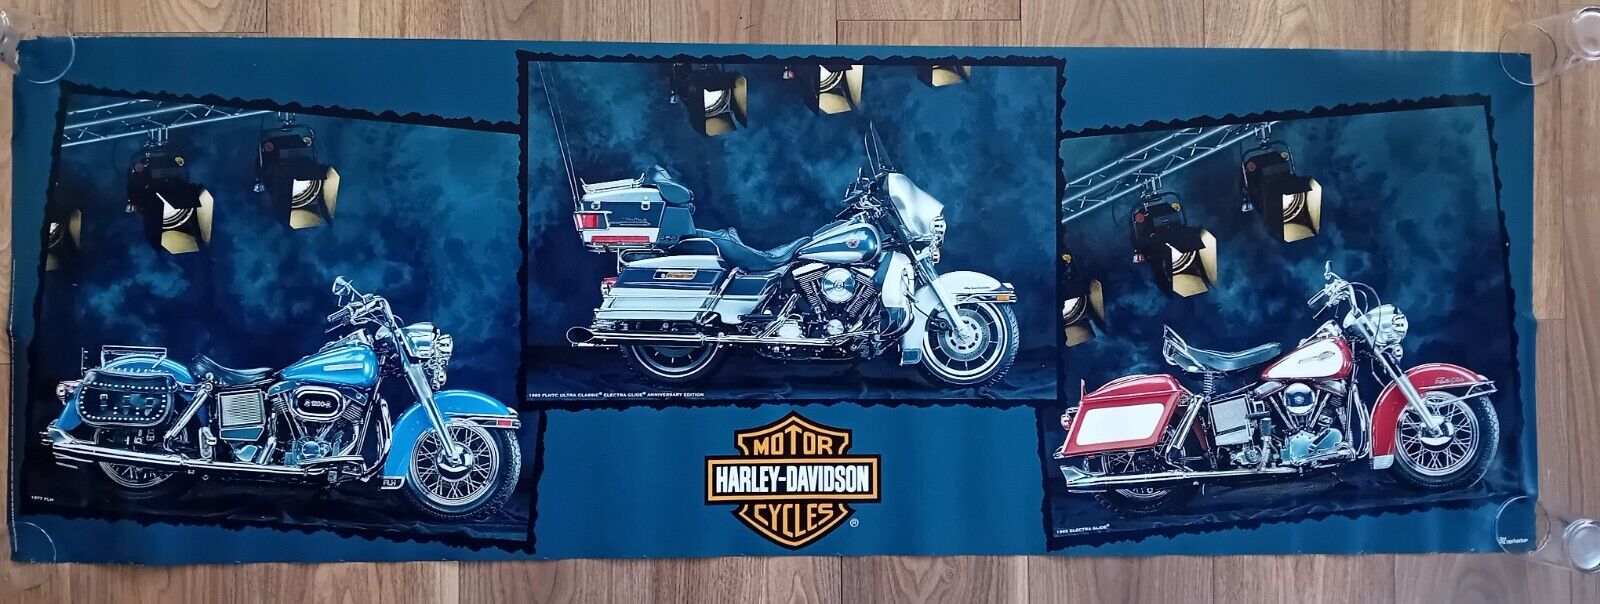 Harley Davidson Authentic Licensed 1994 Huge Poster